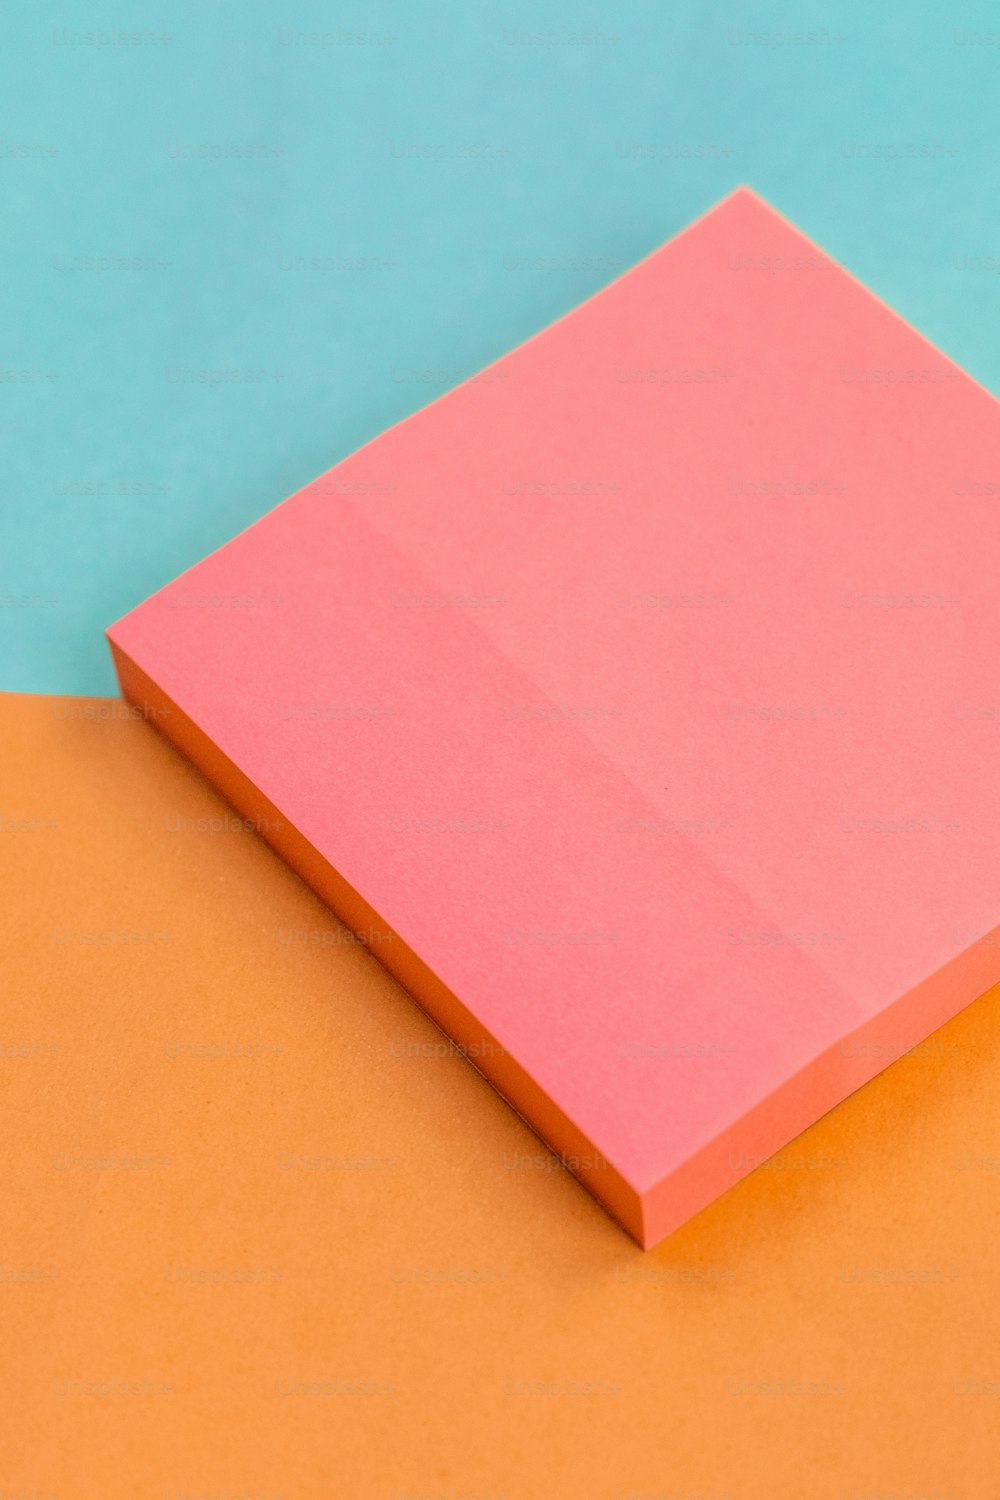 주황색과 파란색 표면 위��에 놓인 분홍색 종이 한 장